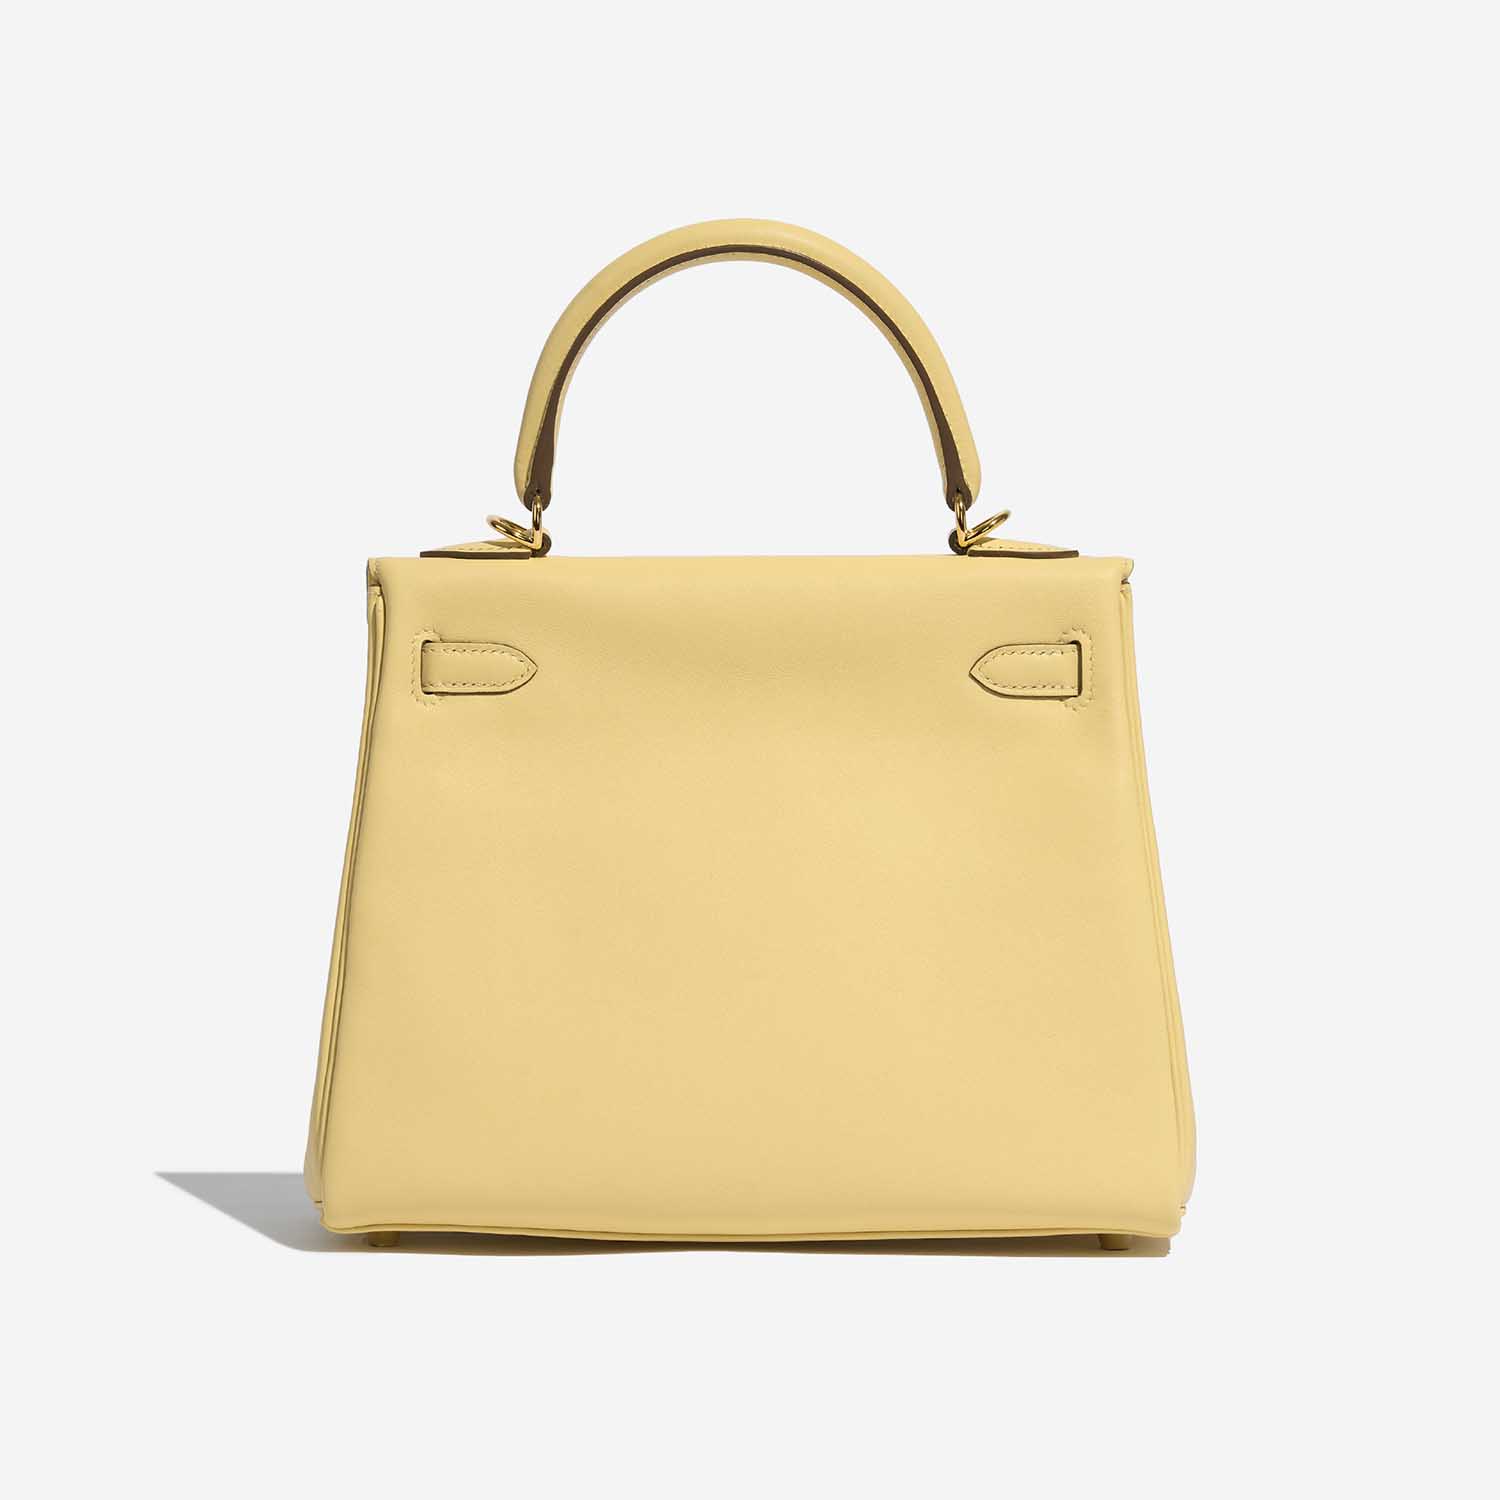 Sac Hermès d'occasion Kelly 25 Swift Jaune Poussin Yellow Back | Vendez votre sac de créateur sur Saclab.com